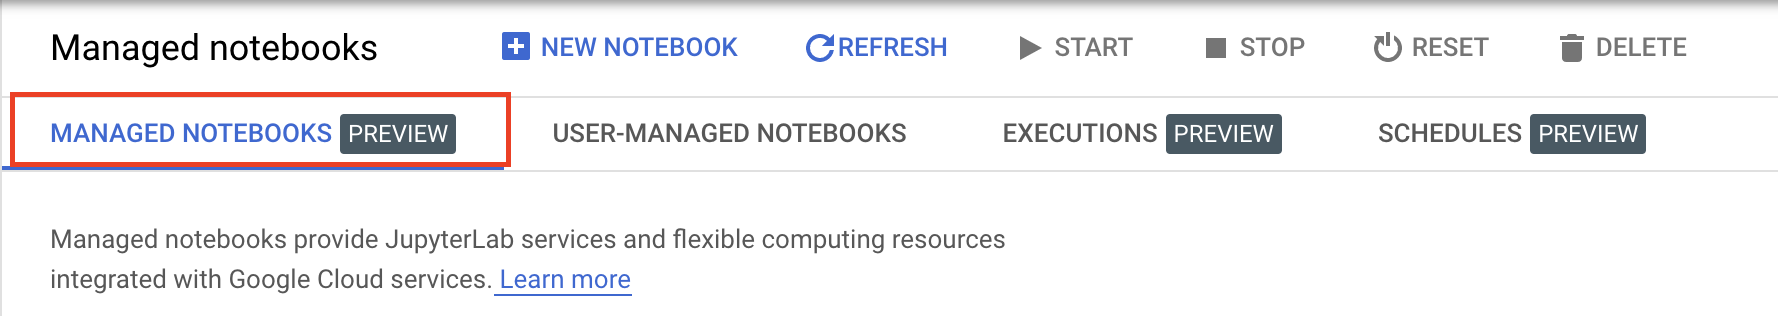 Notebook_UI